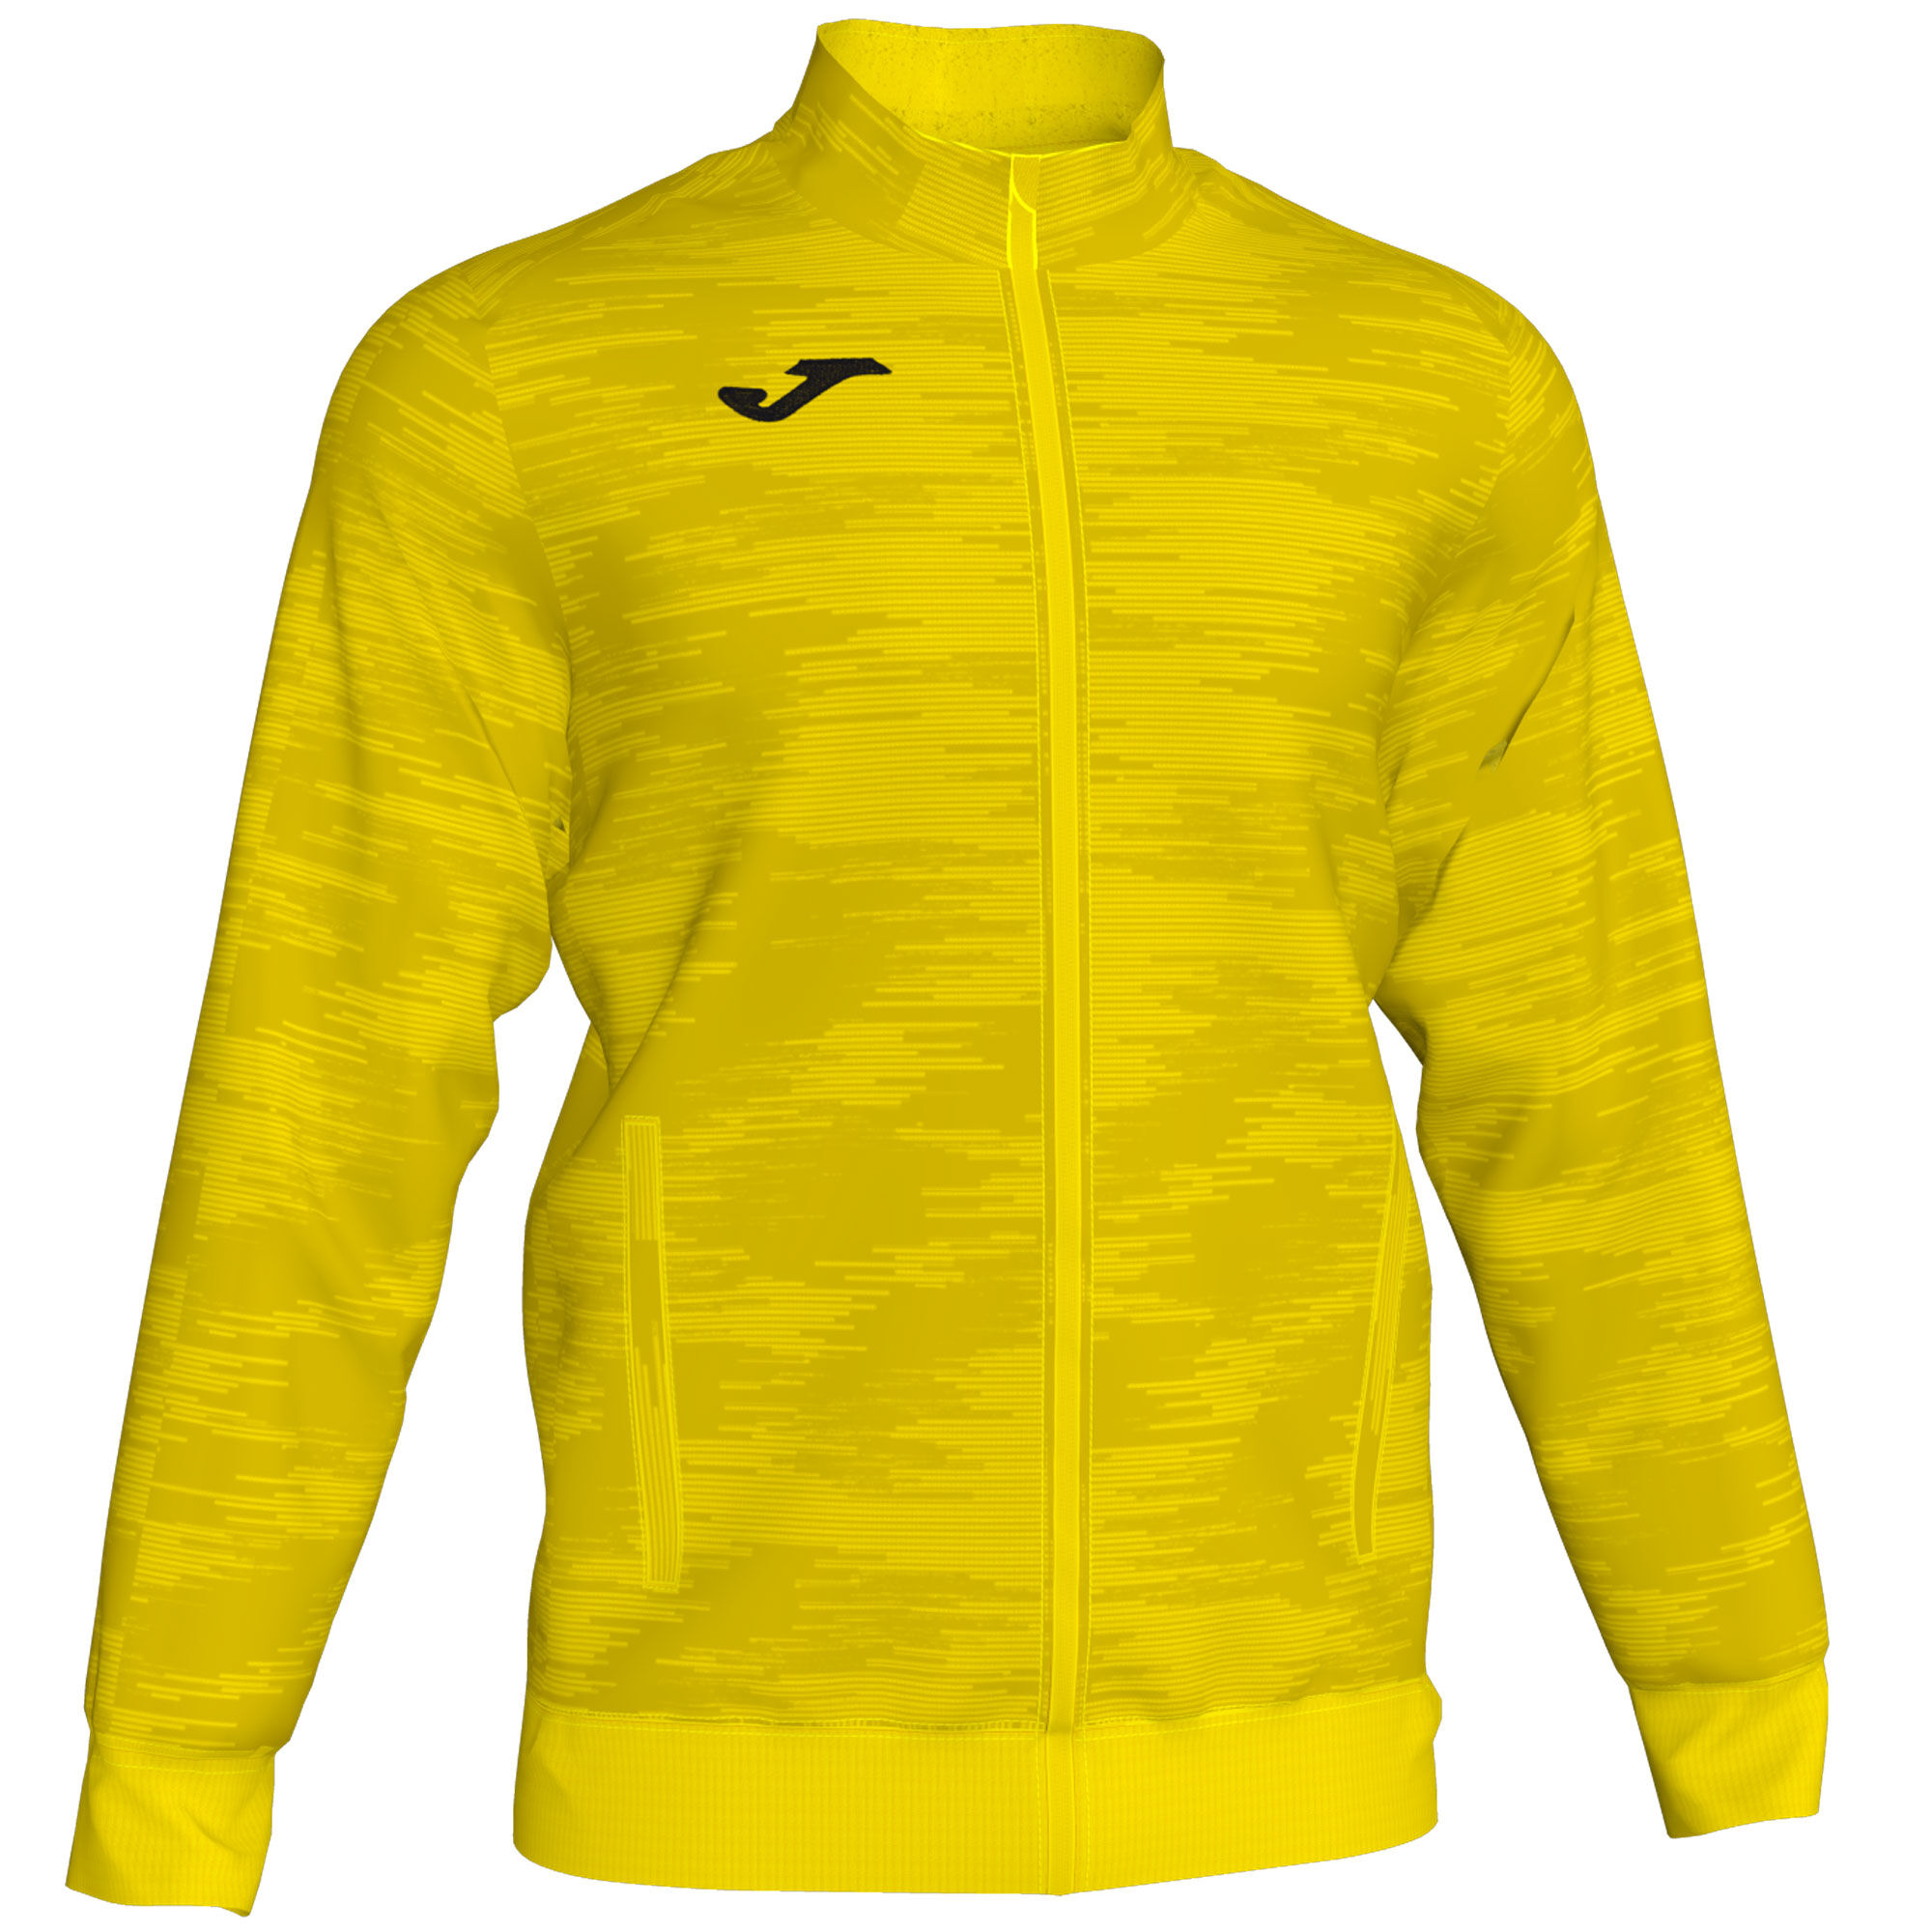 Jacket man Grafity yellow